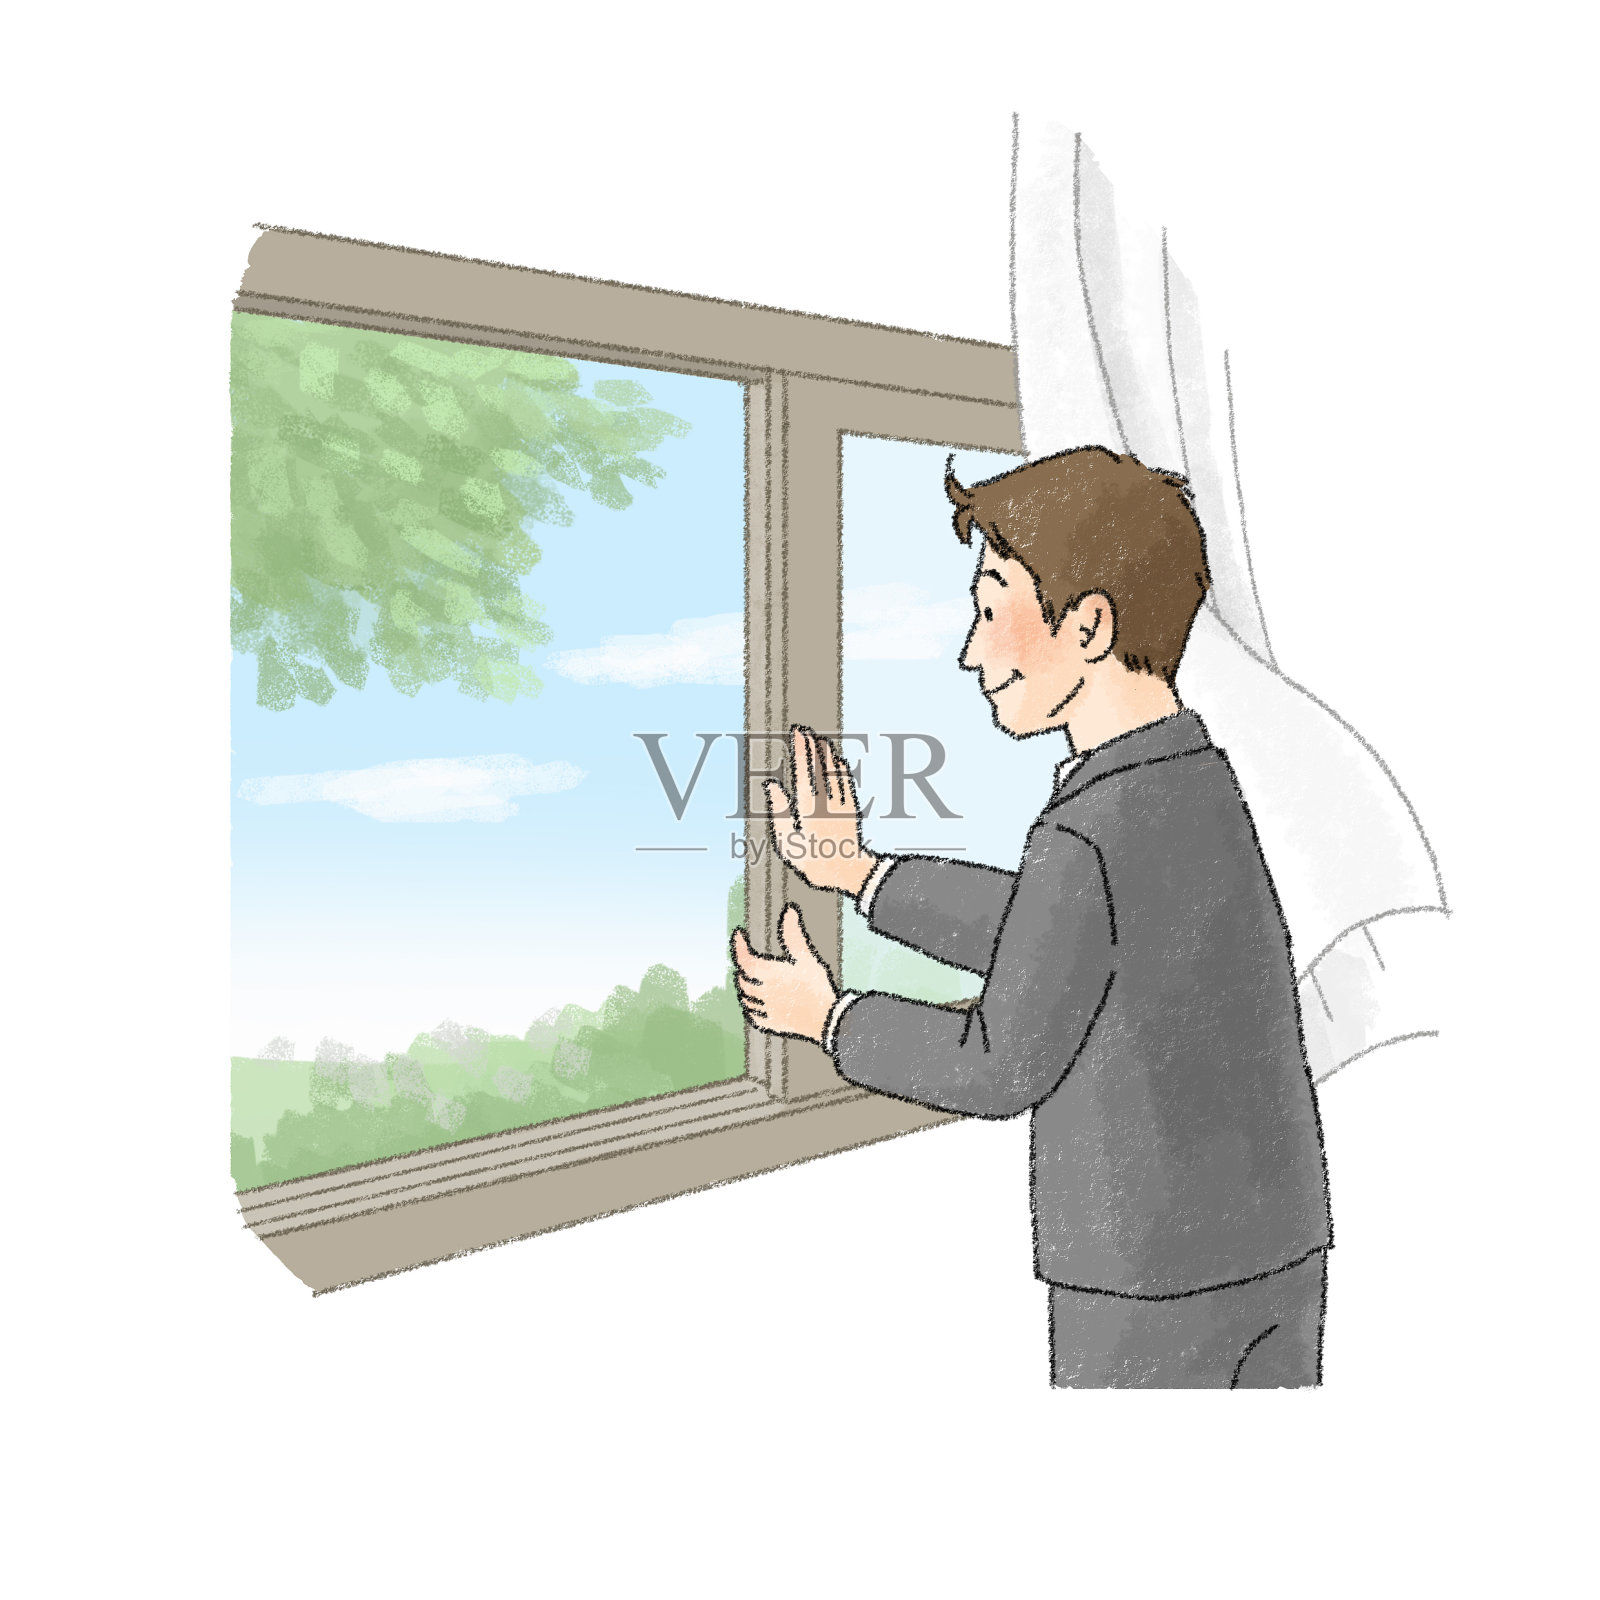 一个人打开窗户和通风的插图(男性办公室职员)插画图片素材